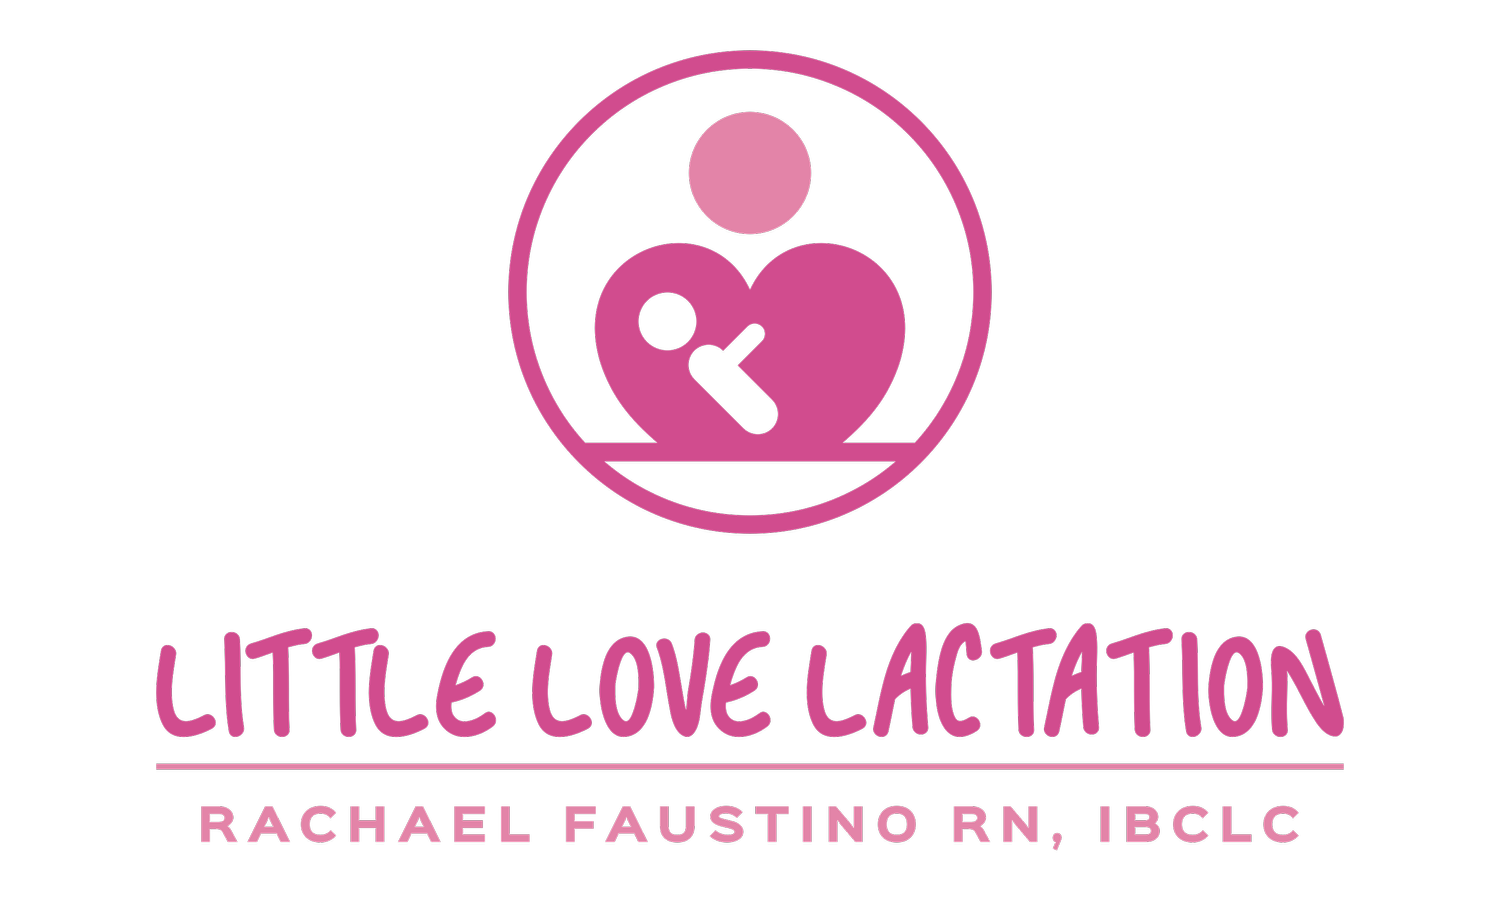 Little Love Lactation